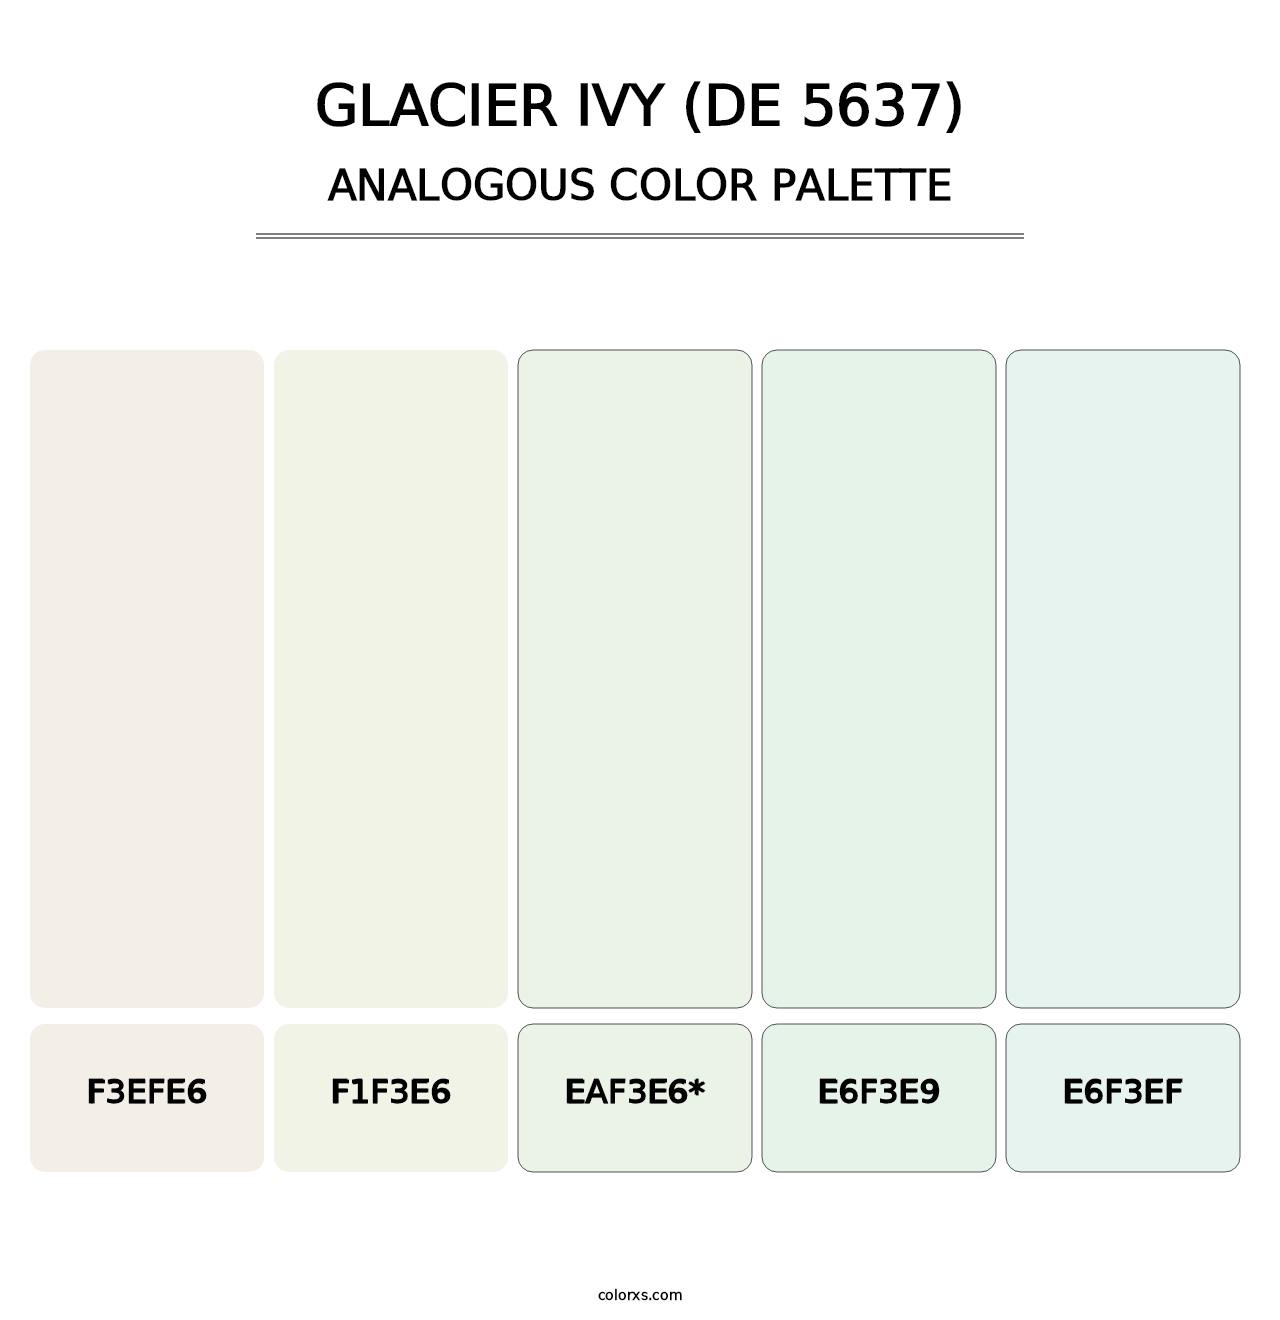 Glacier Ivy (DE 5637) - Analogous Color Palette